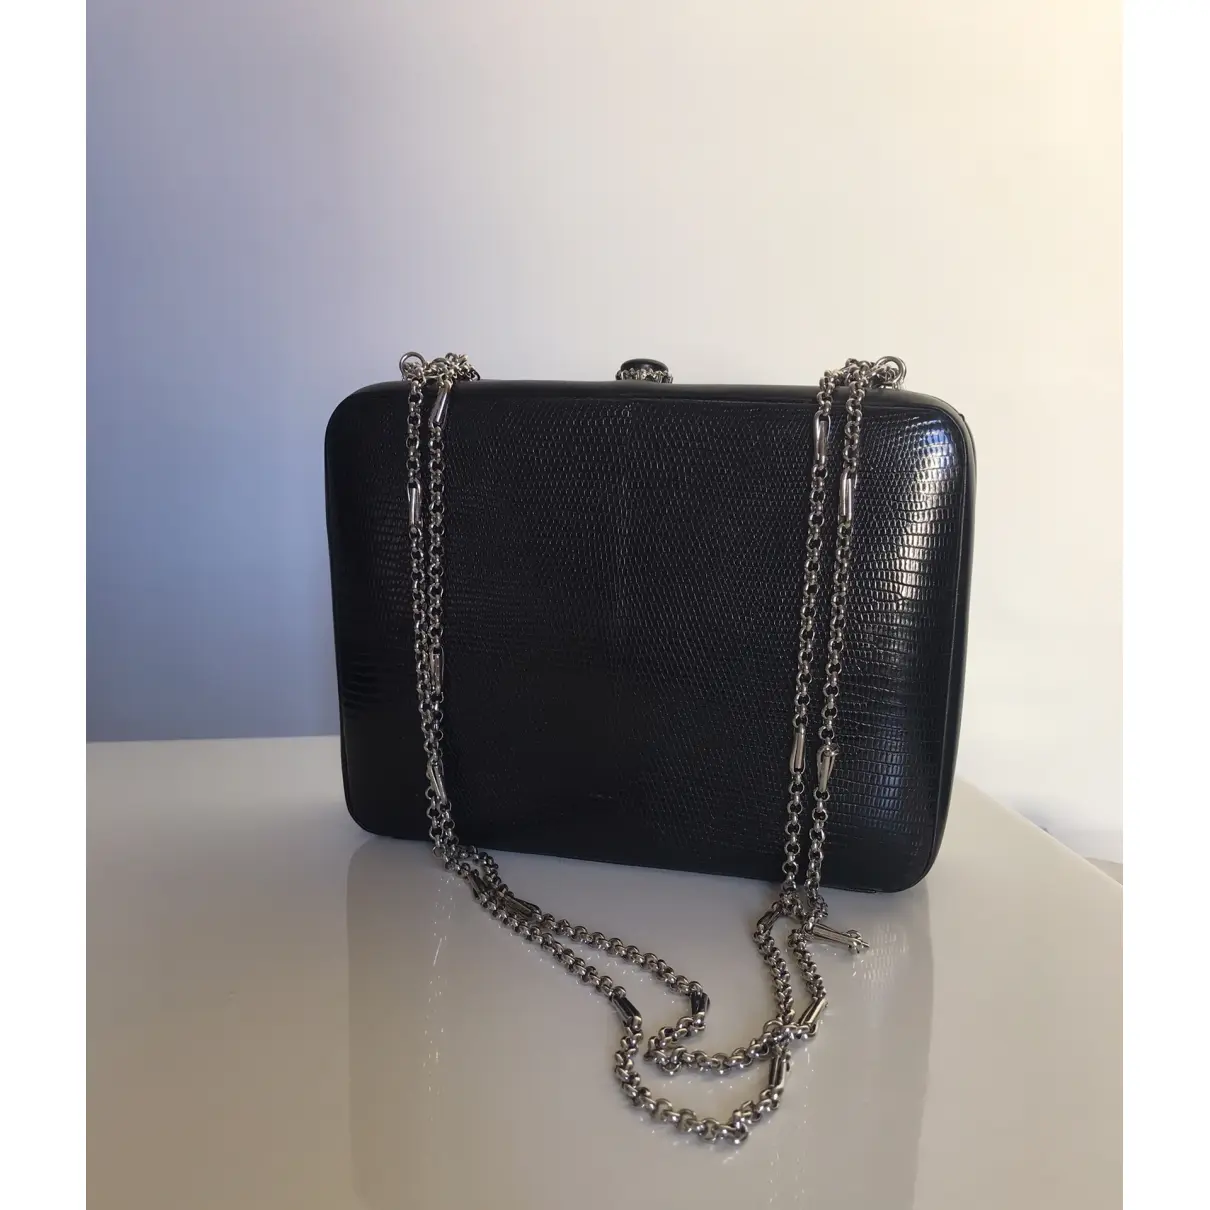 Leather handbag FONTANA - Vintage